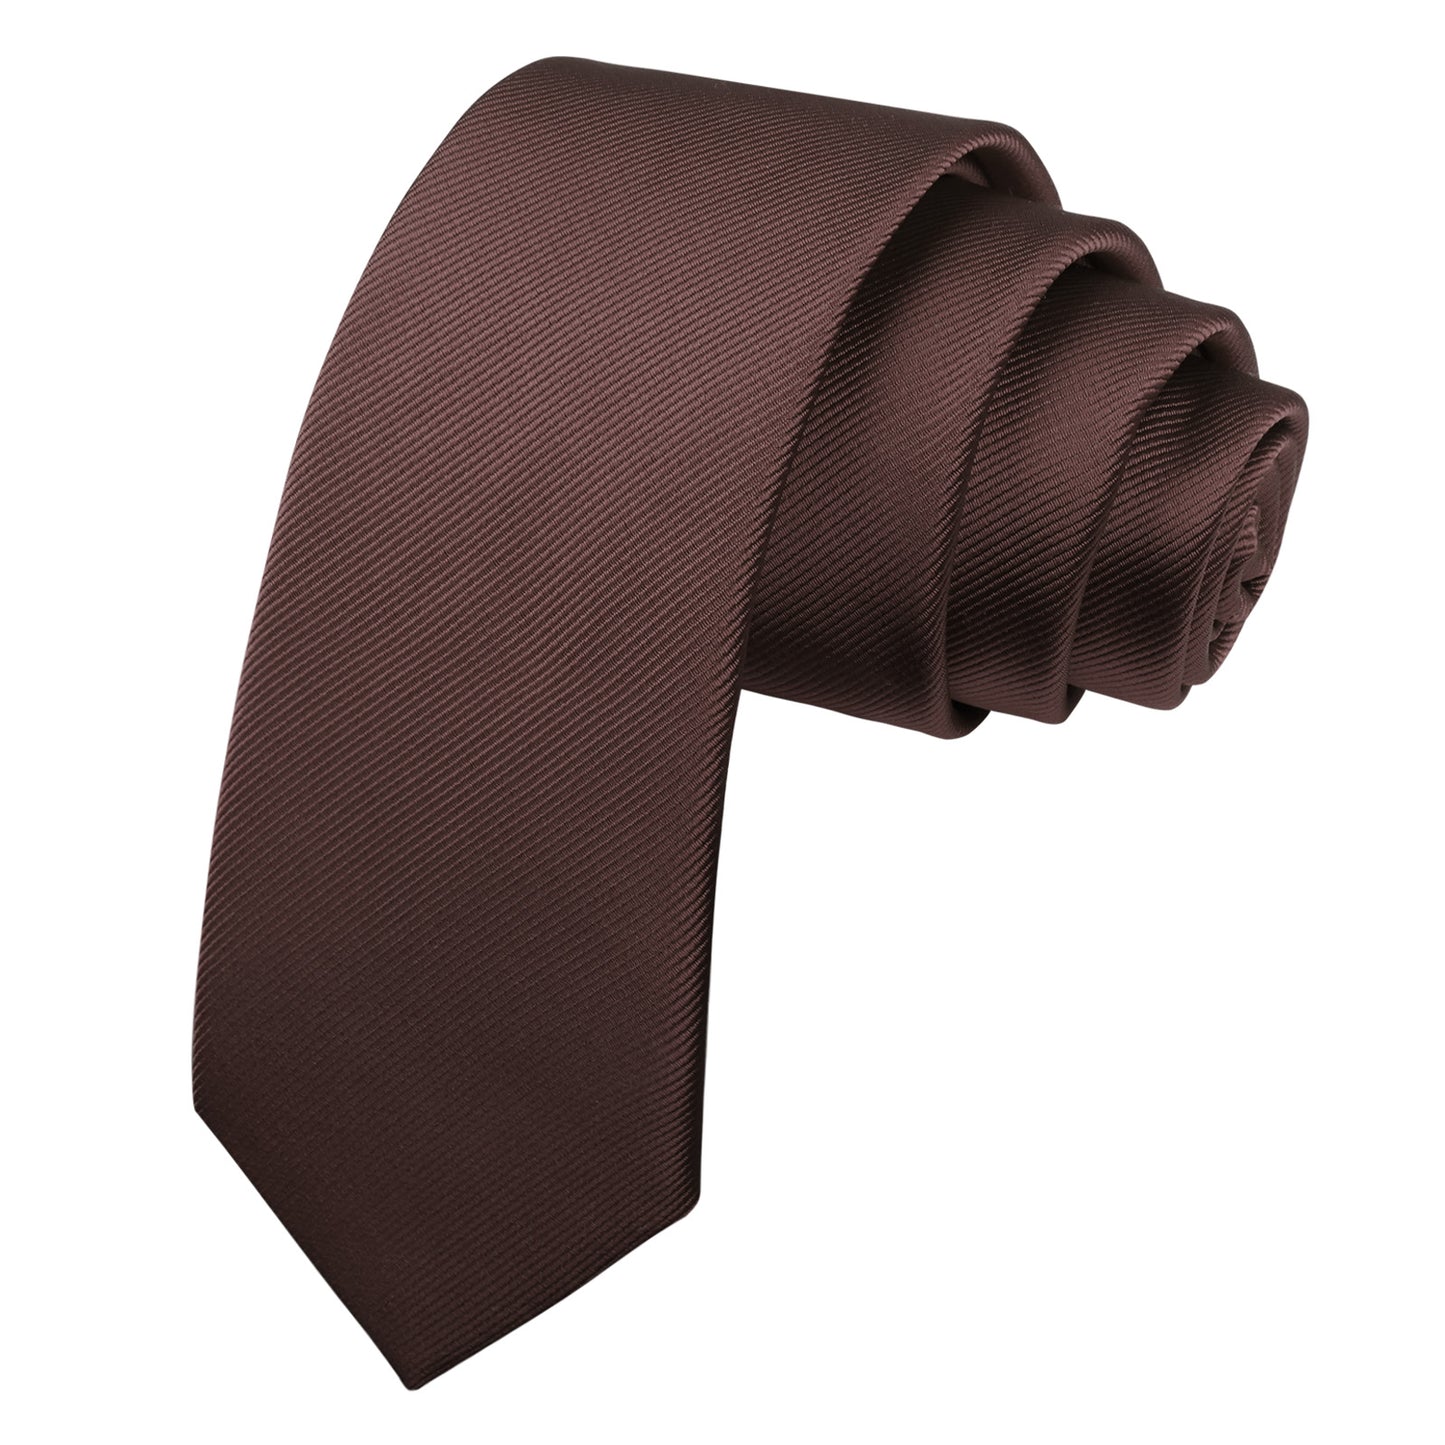 Alizeal Men's Solid Color Skinny Neckties #071